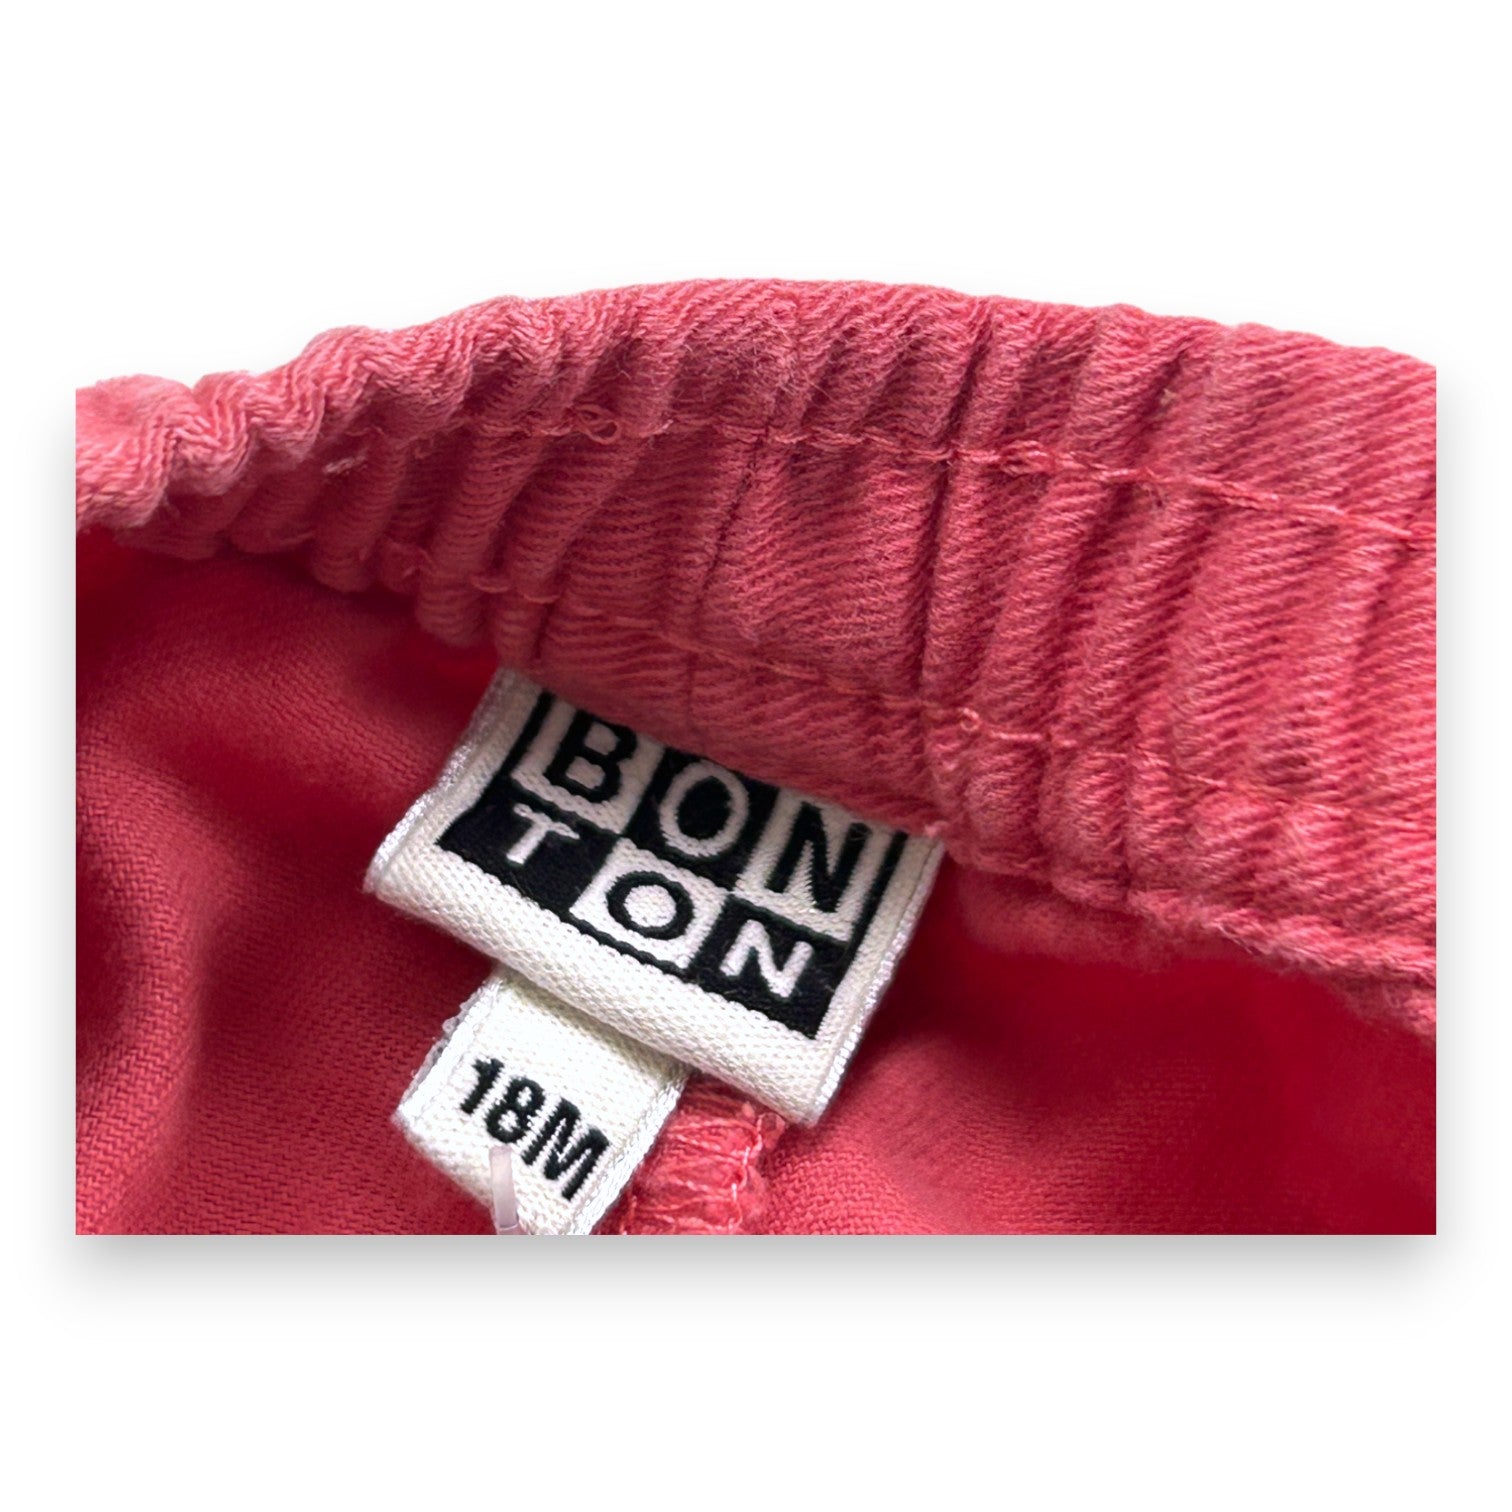 BONTON - Pantalon rose - 18 mois